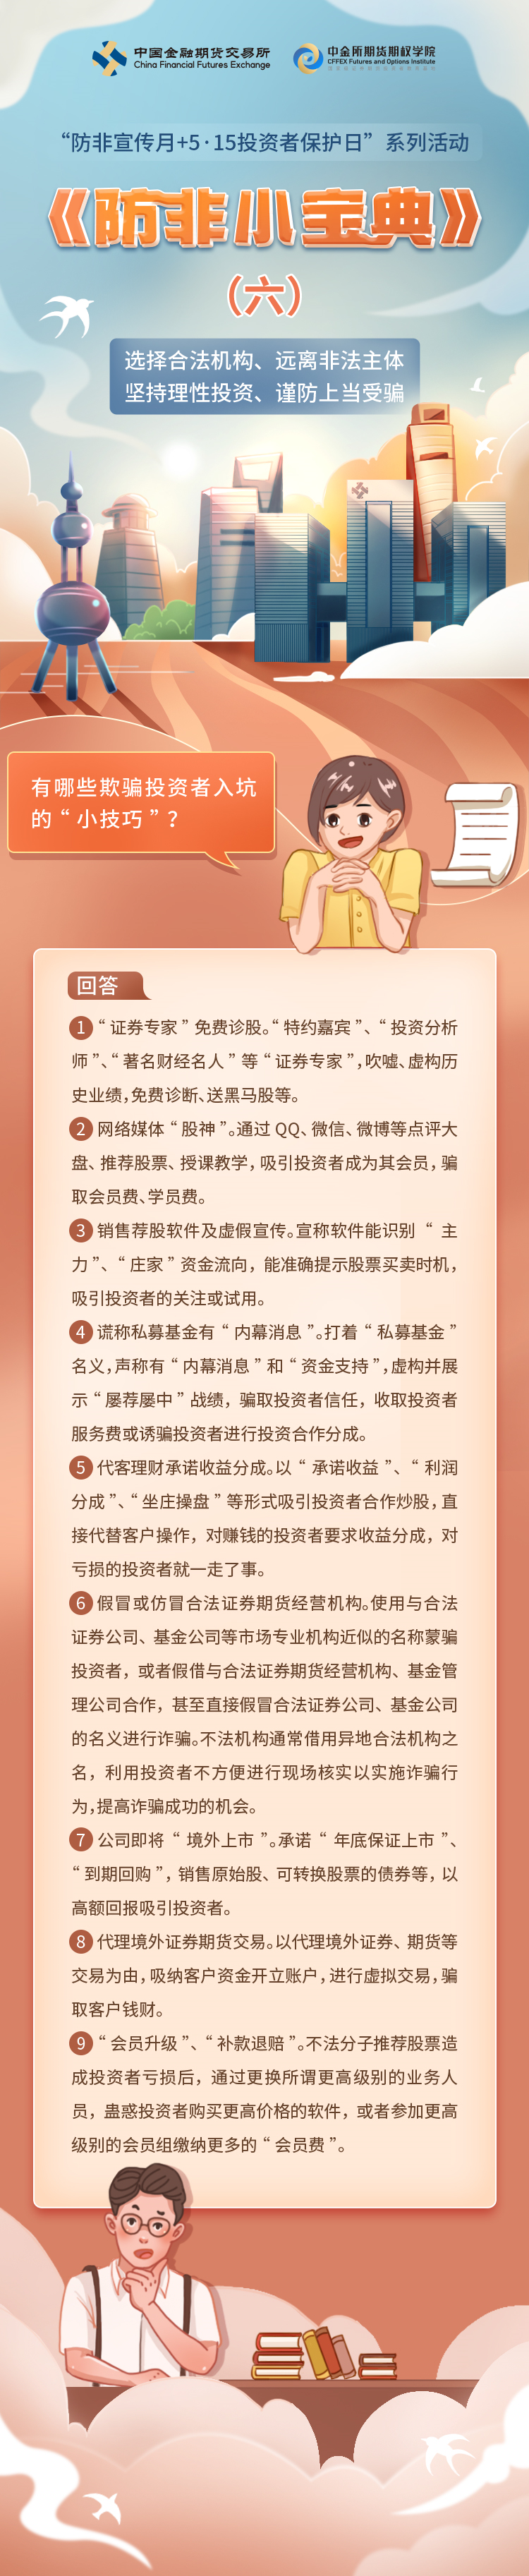 防非宣传月案例长图文6.png